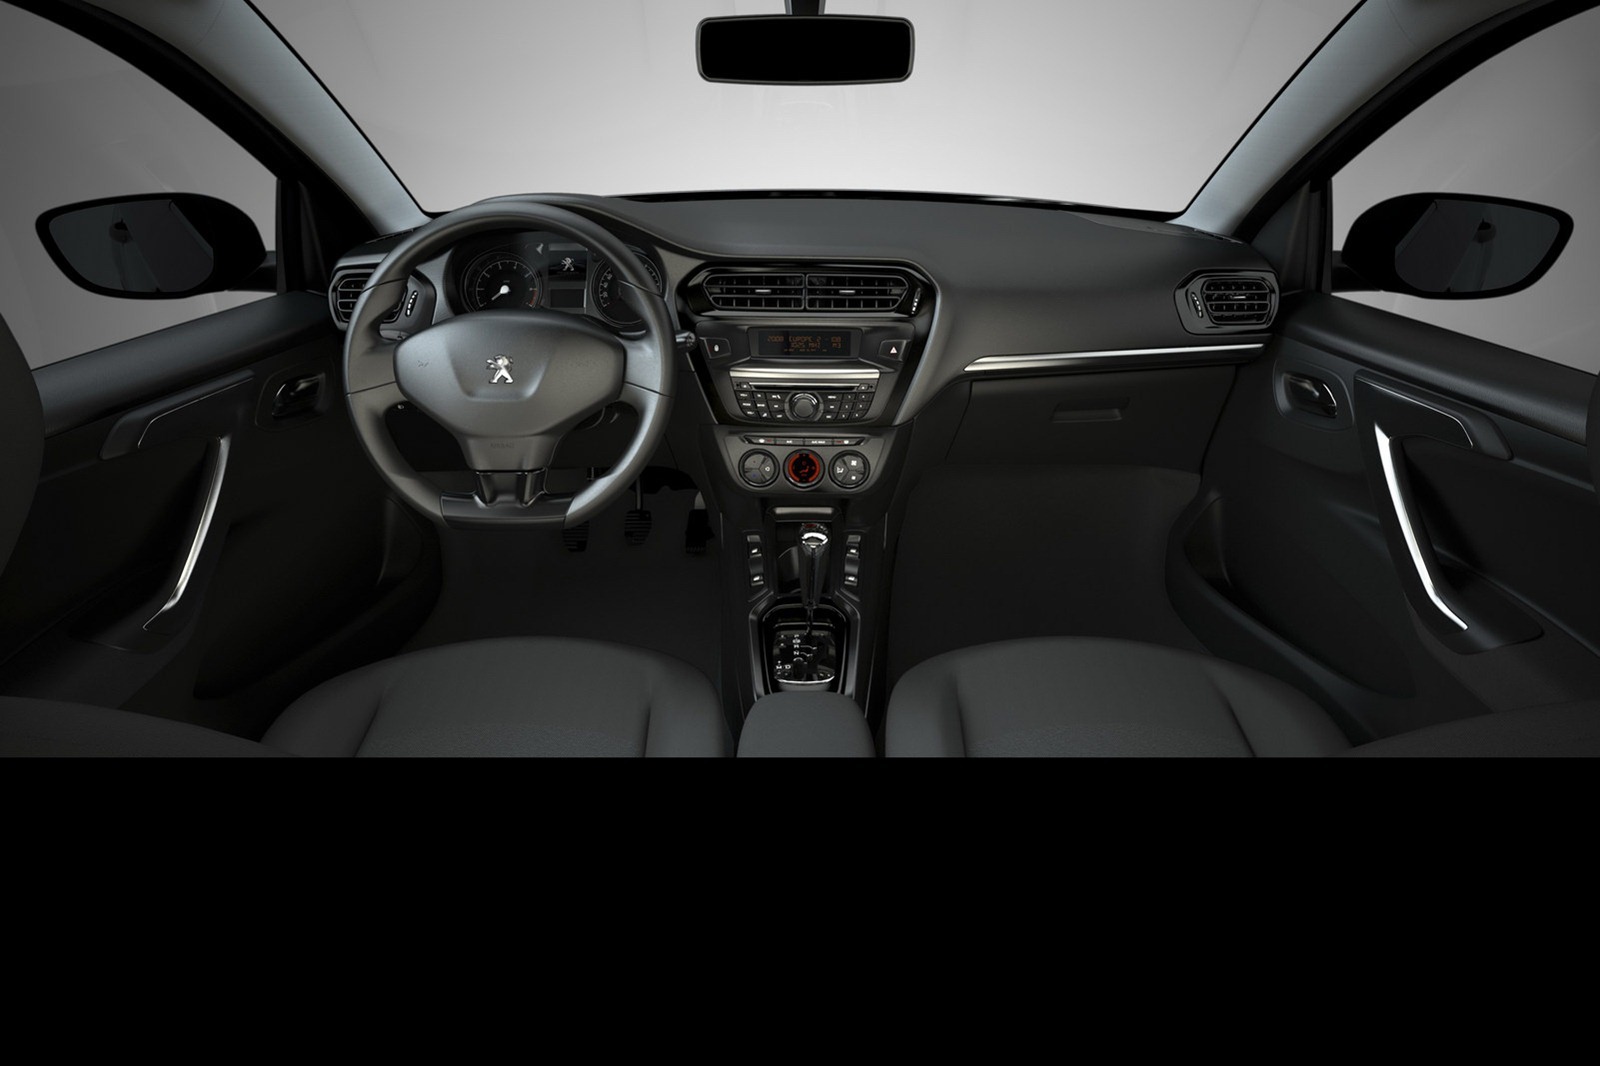 Peugeot 301 va oferi un interior cu stil moderat, dar cu un bun nivel de echipare